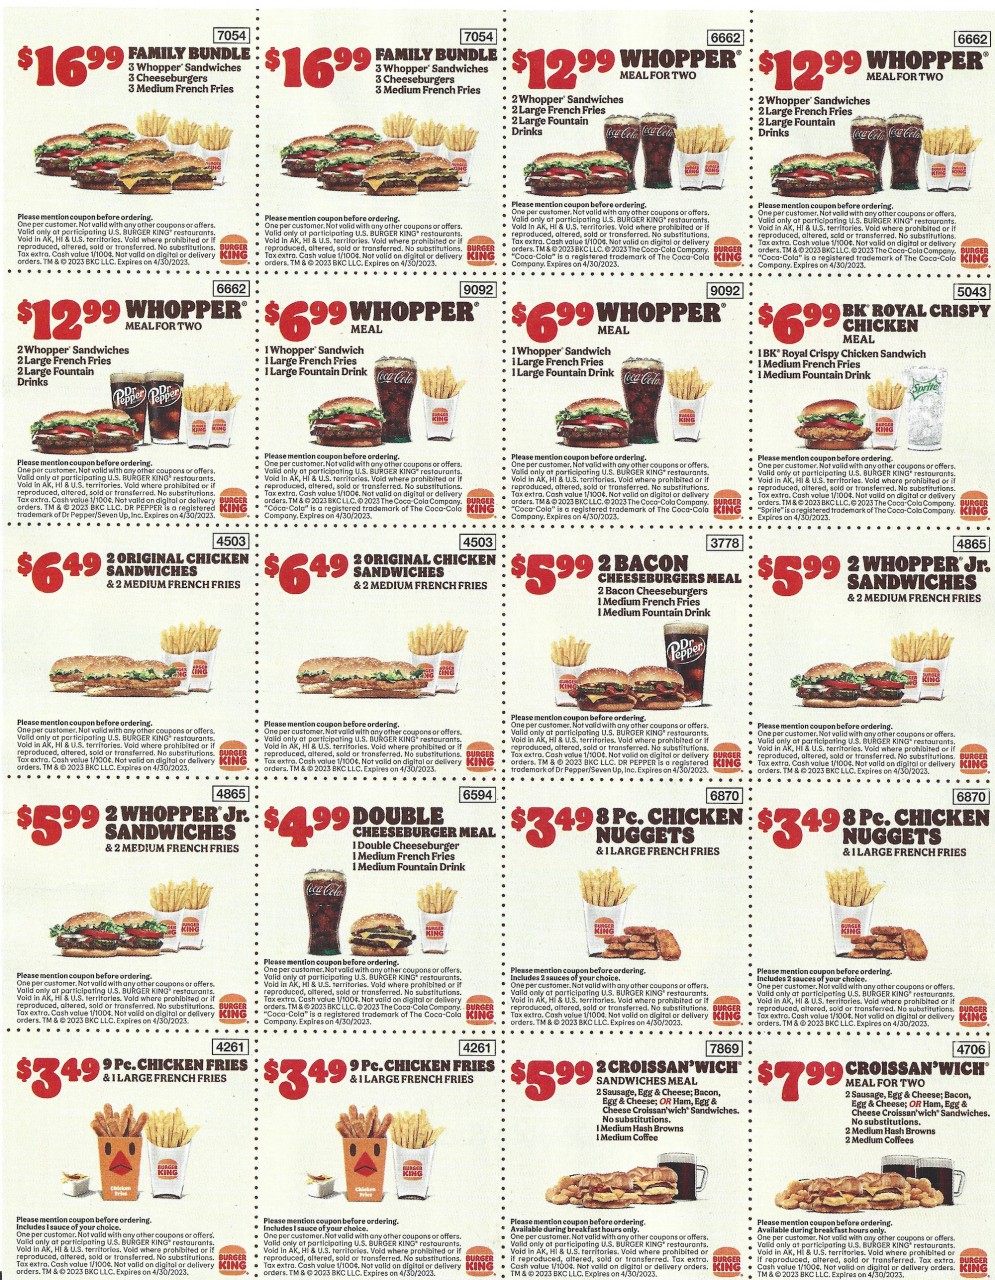 Burger King Coupons Insert - Expires April 30 2023 2